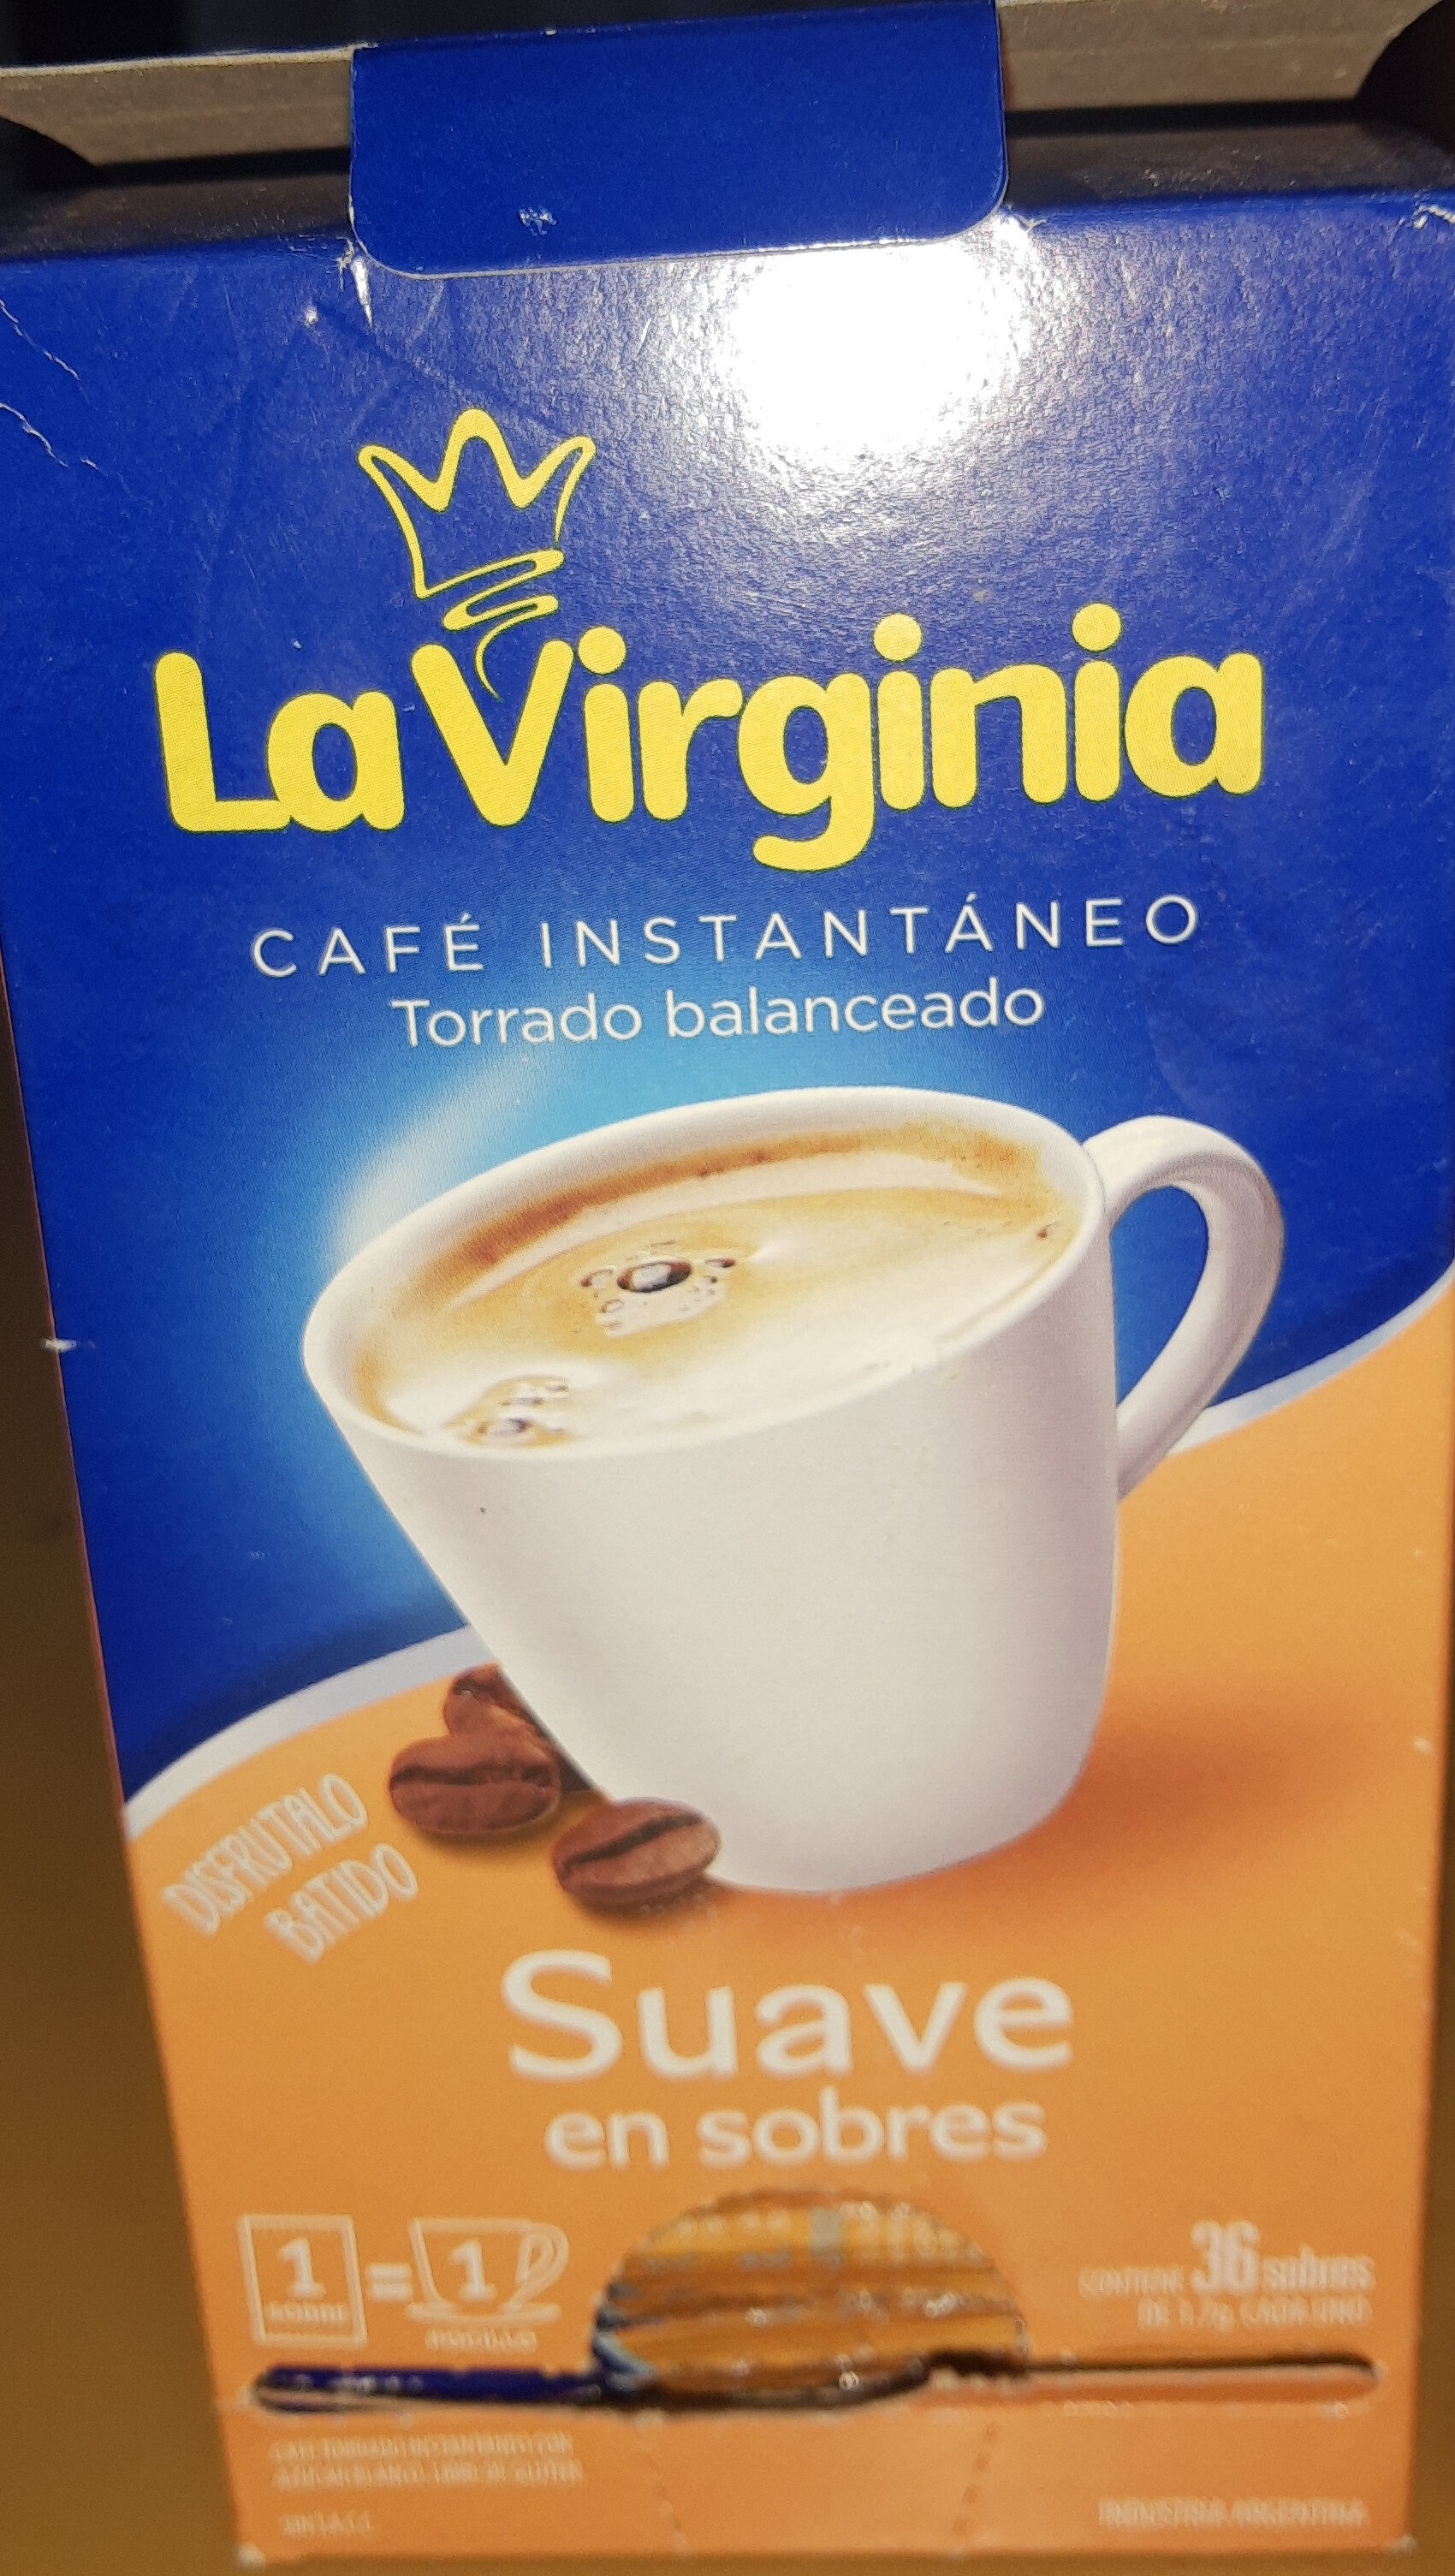 Café instantáneo suave - Product - es